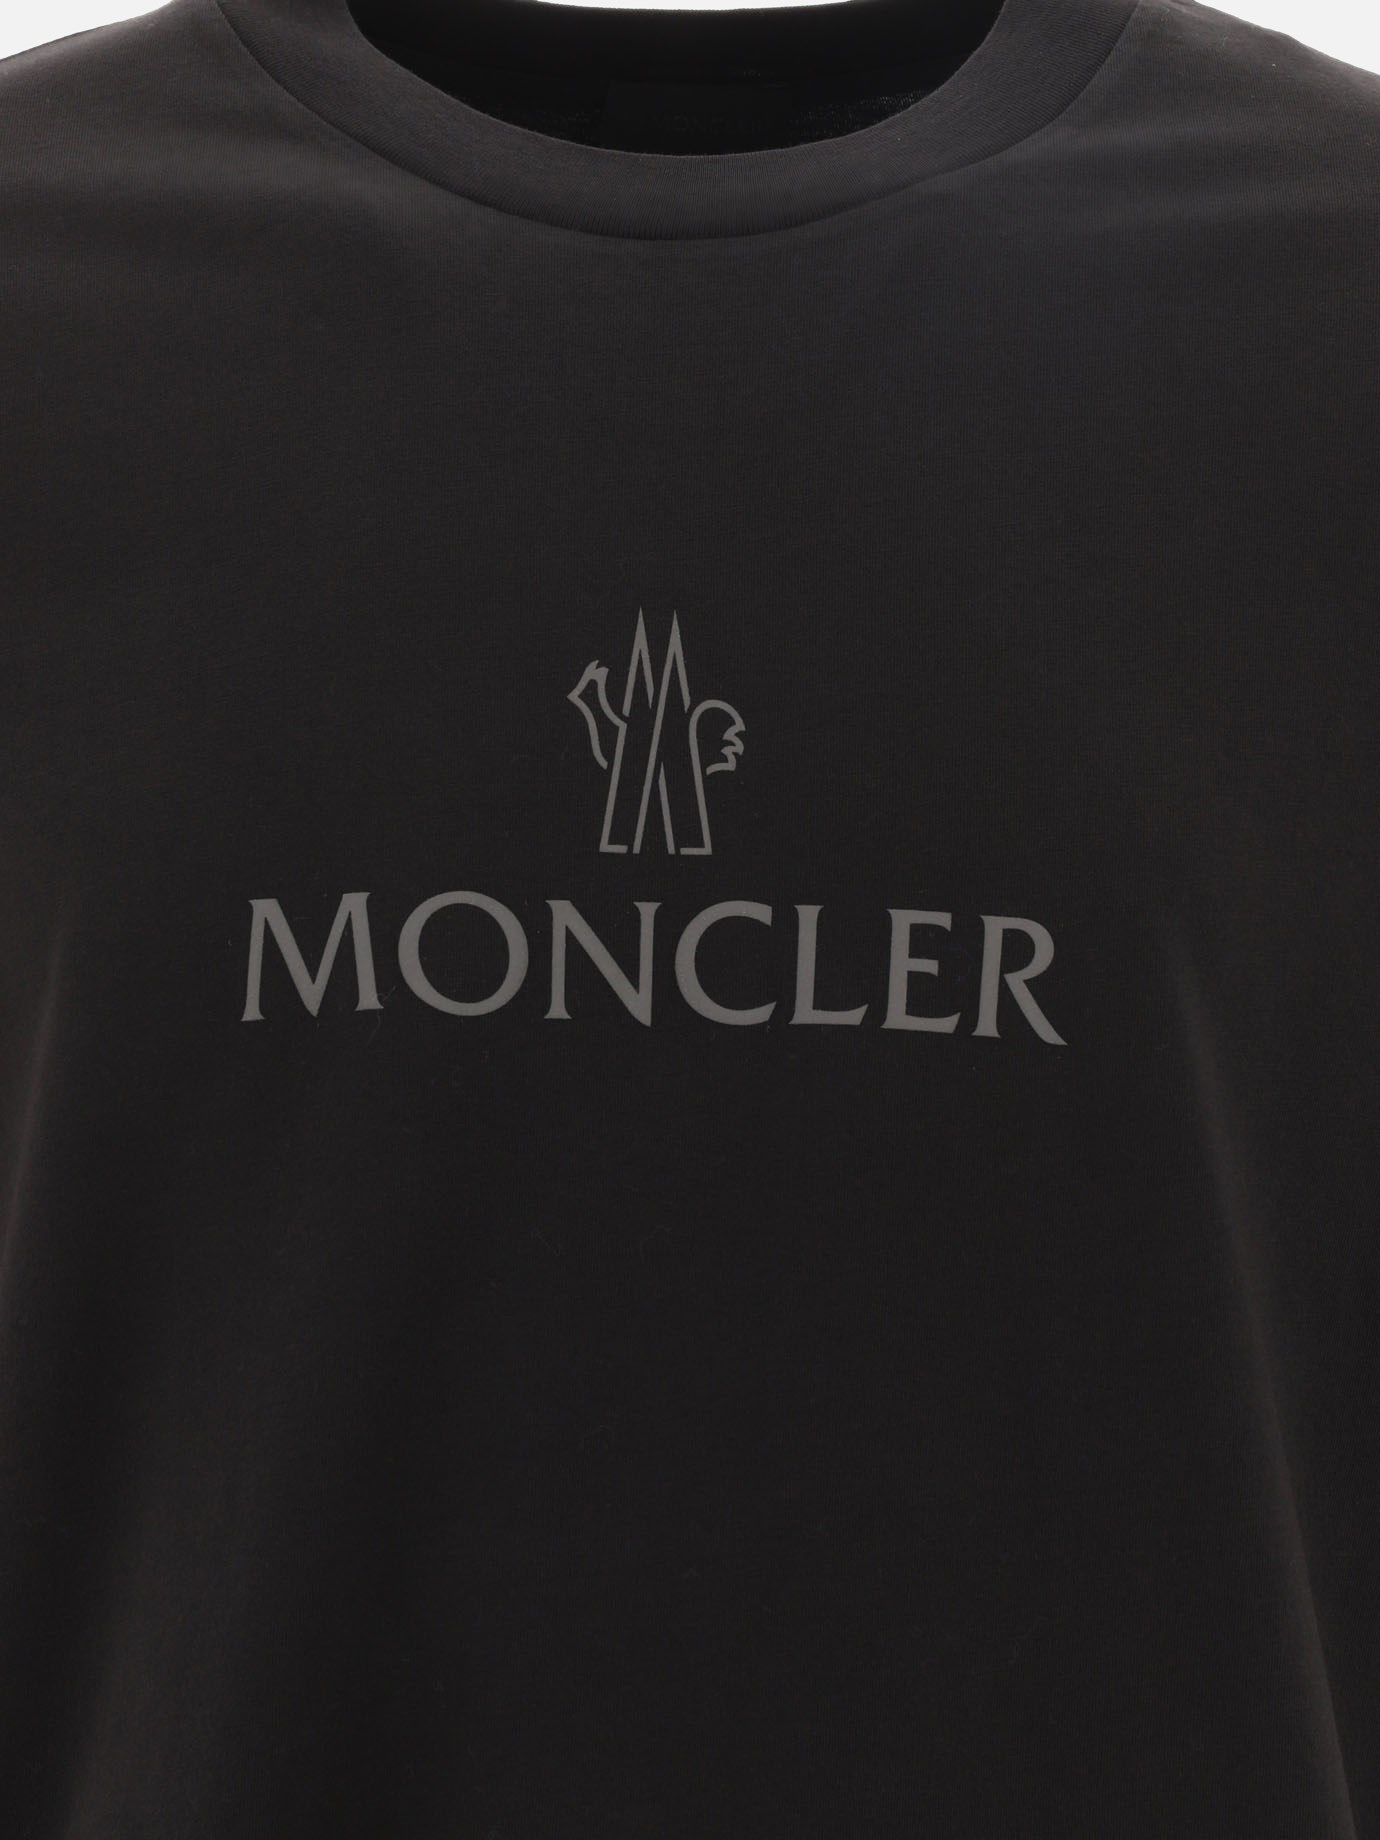 T-shirt  Matt Black  by Moncler